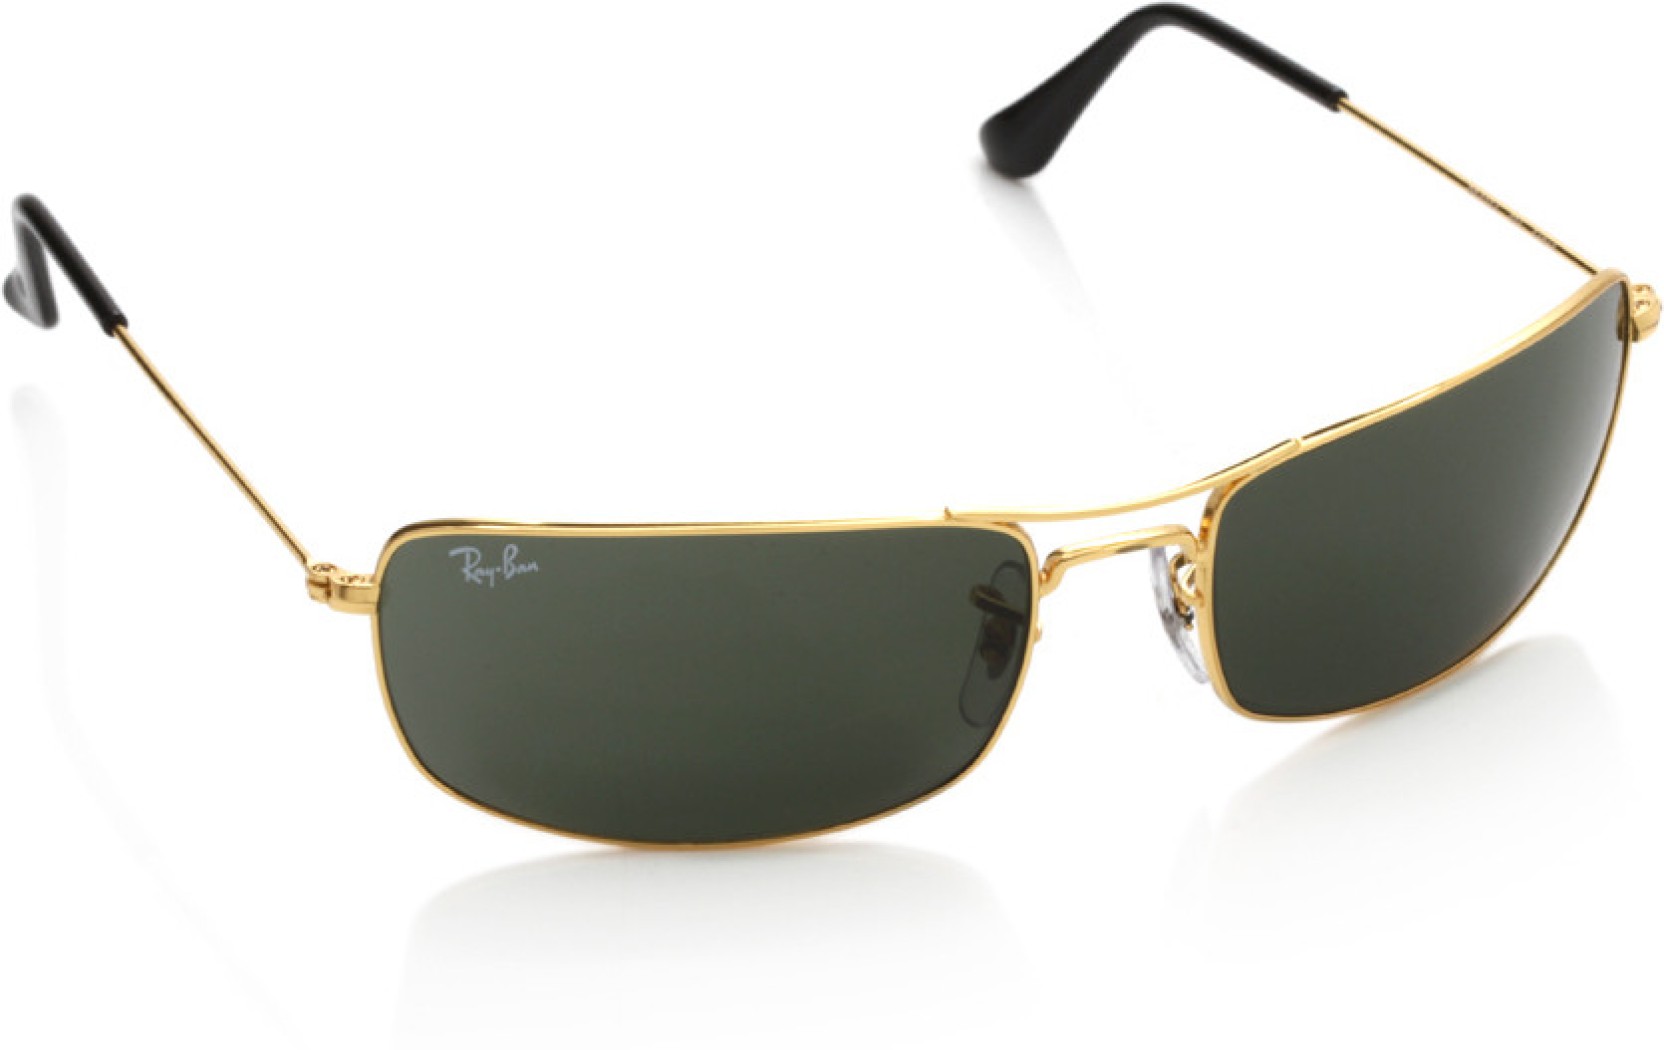 Buy Ray-Ban Rectangular Sunglasses Green For Men Online ...